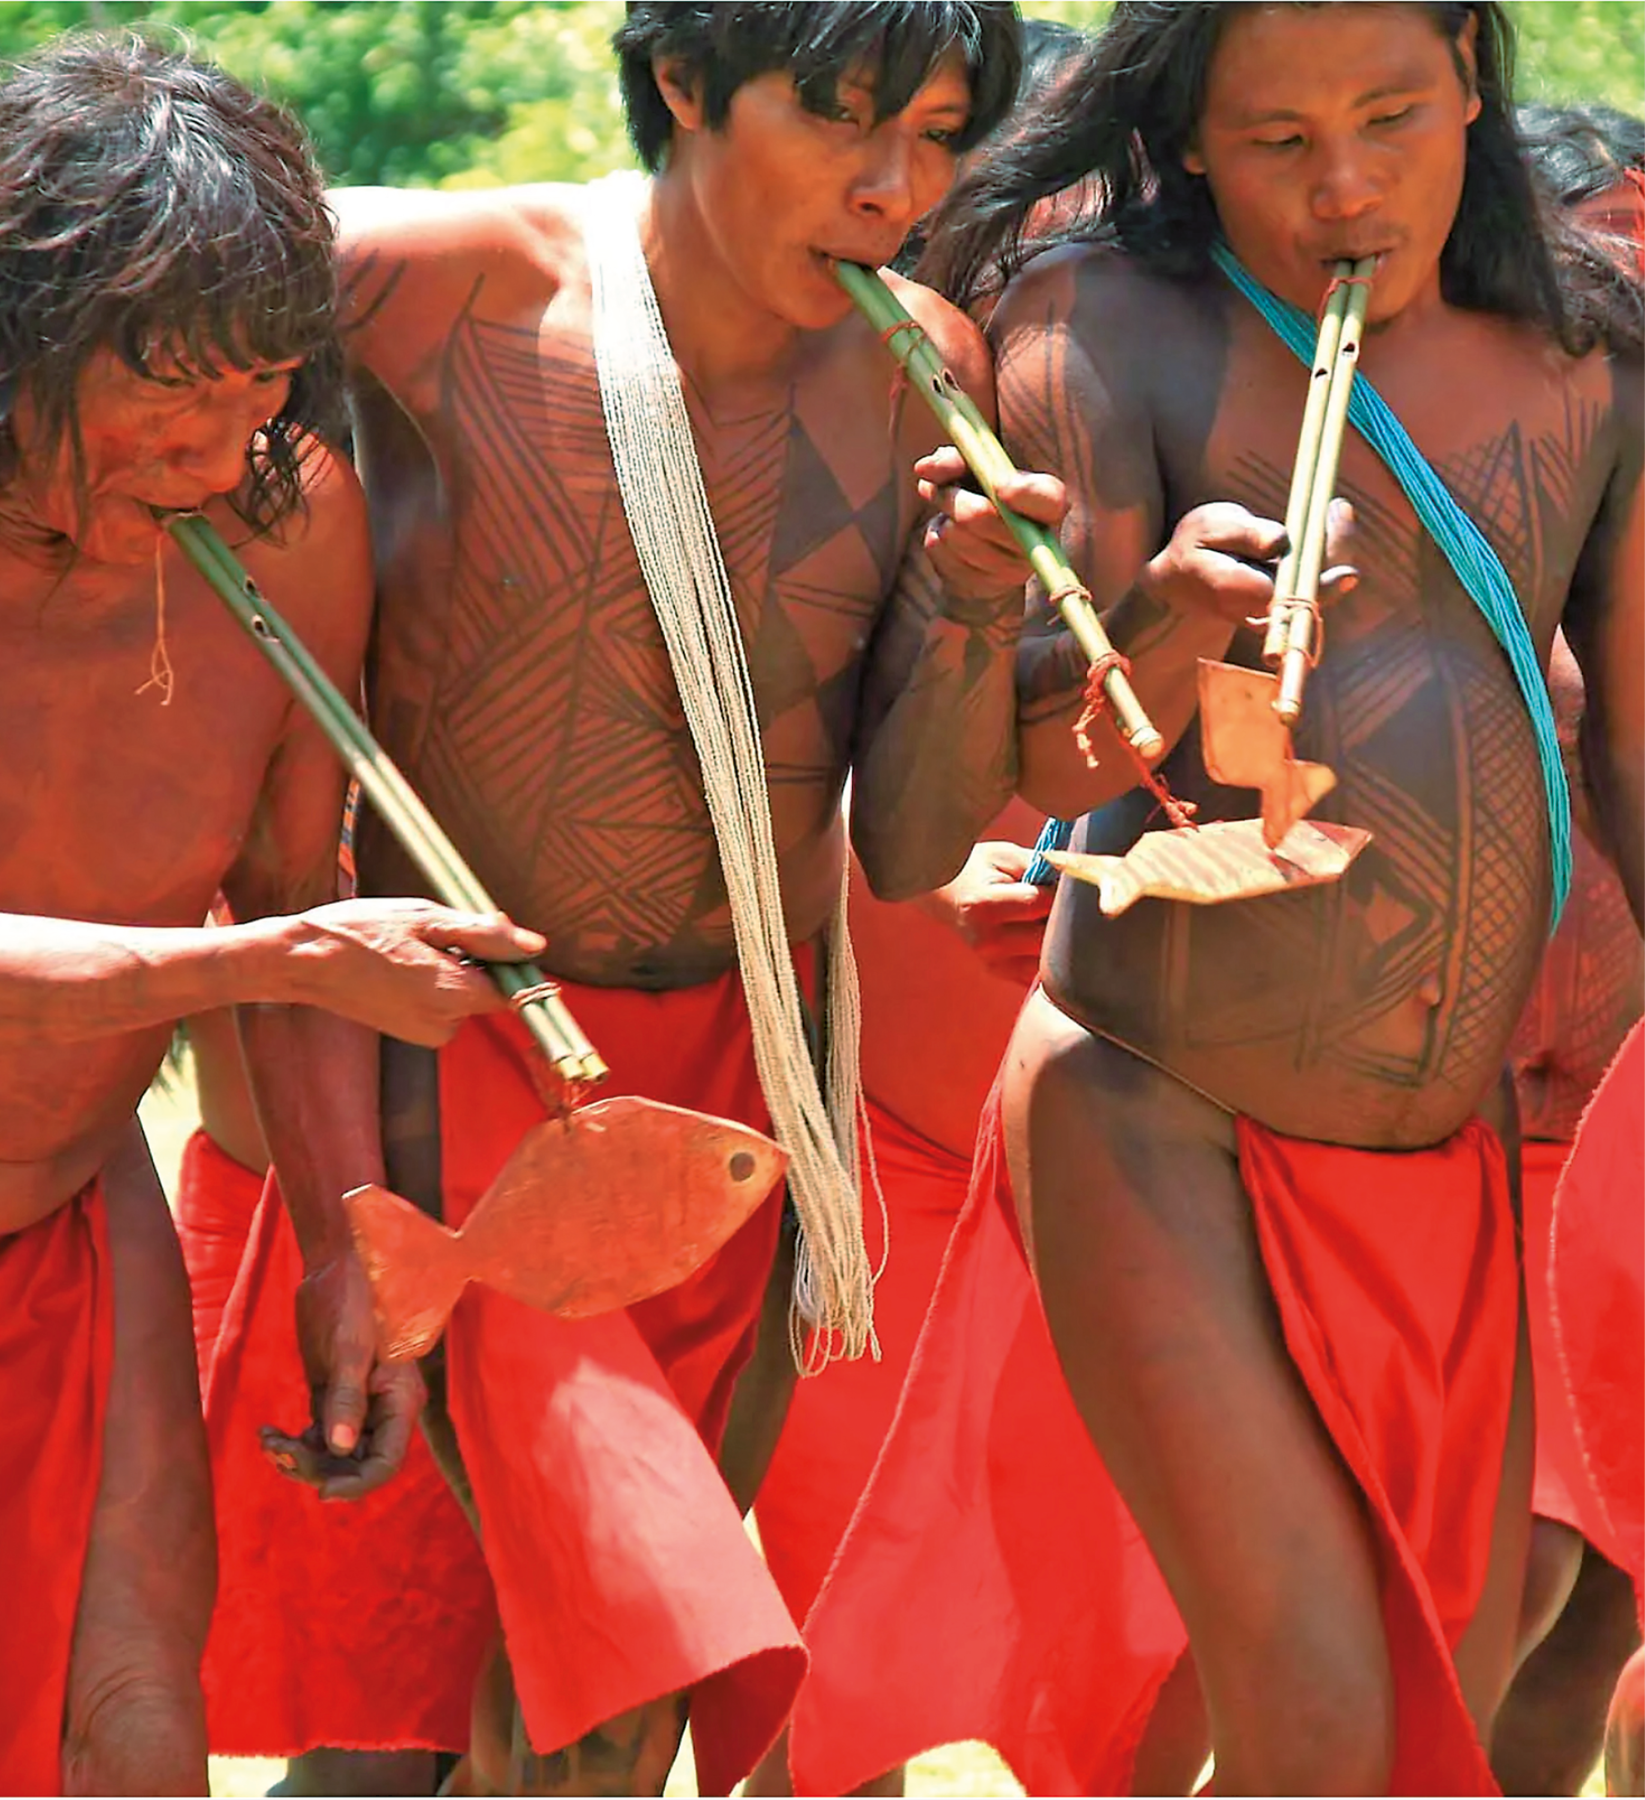 Fotografia. Três homens indígenas vestem uma espécie de tanga vermelha e têm o tronco pintado.  Eles tocam com a boca um instrumento de feito de bambu.